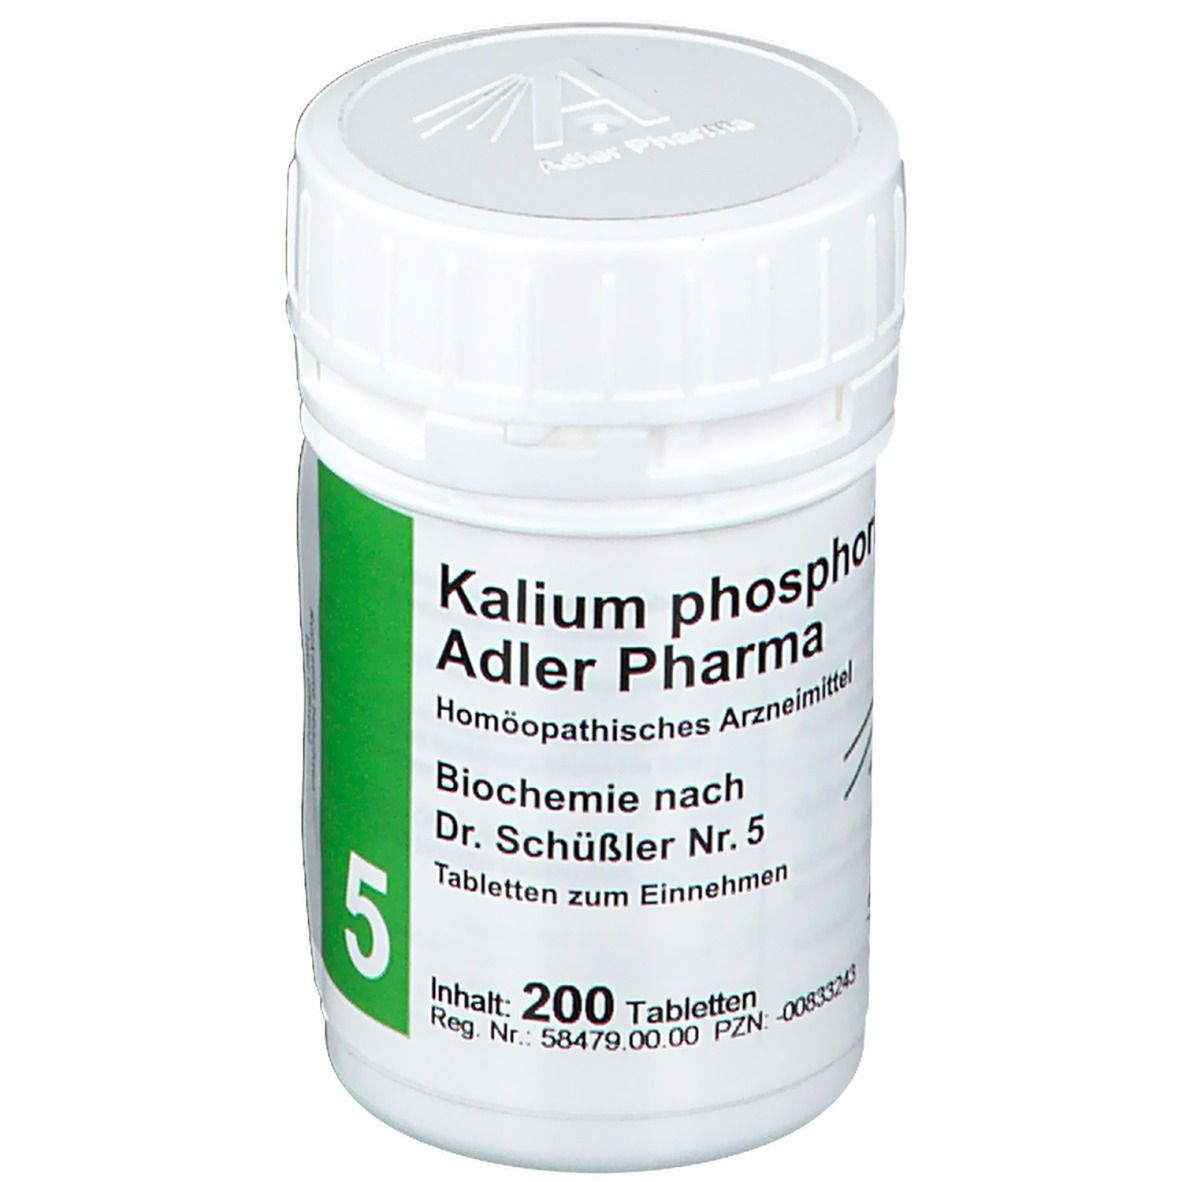 Adler Pharma Kalium phosphoricum D6 Biochemie nach Dr. Schüßler Nr. 5